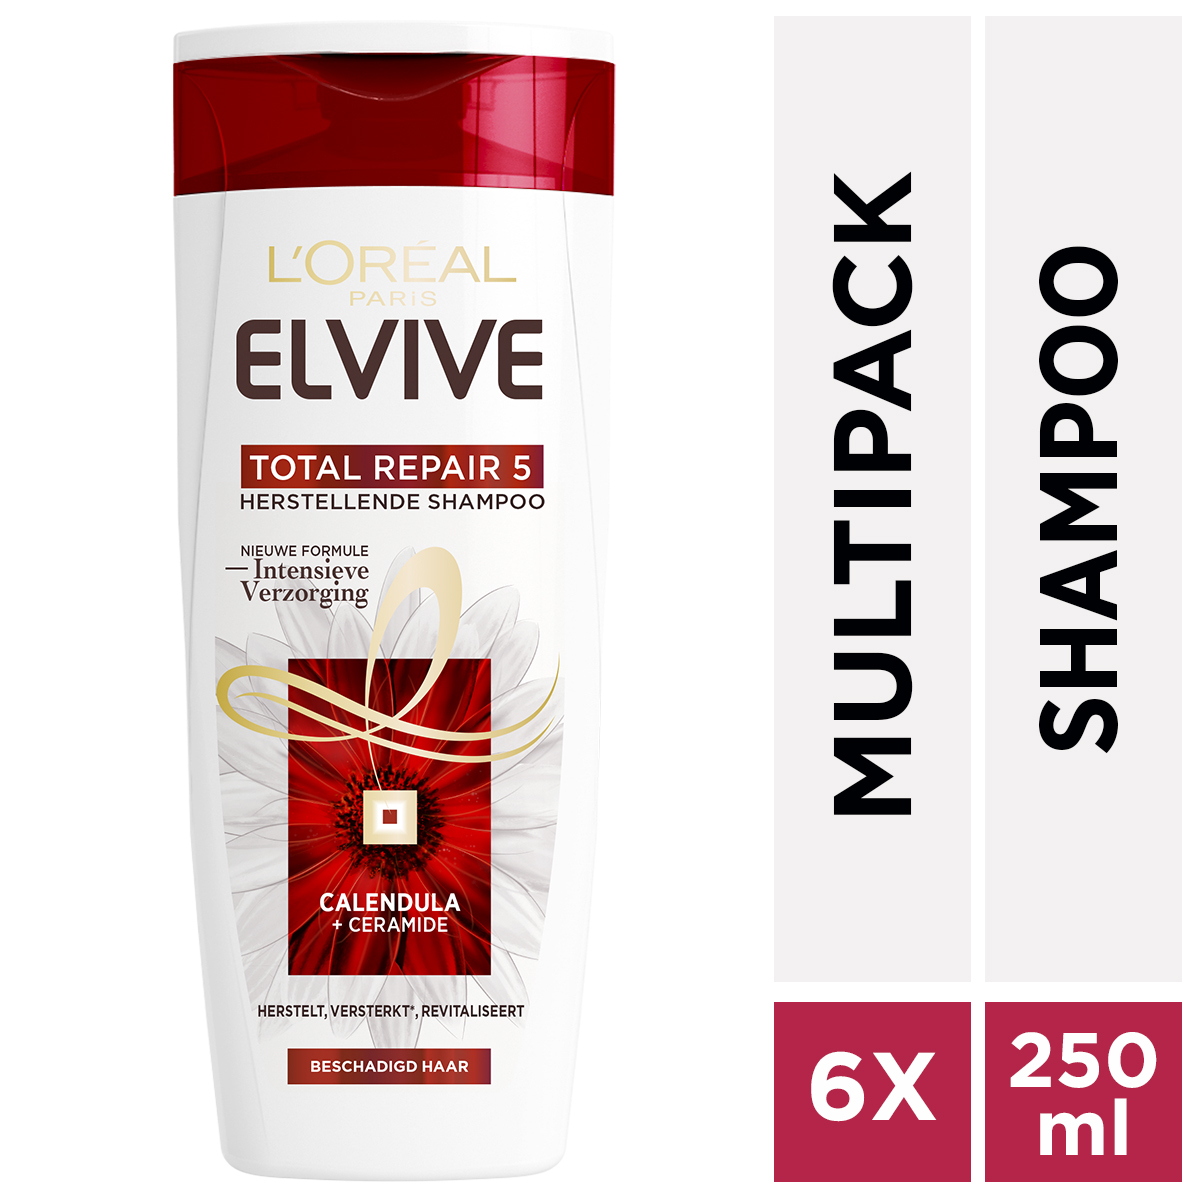 L'Oréal Total Repair 5 Elvive Total Repair 5 - 6 x 250 ml - Shampoo - Voordeelverpakking